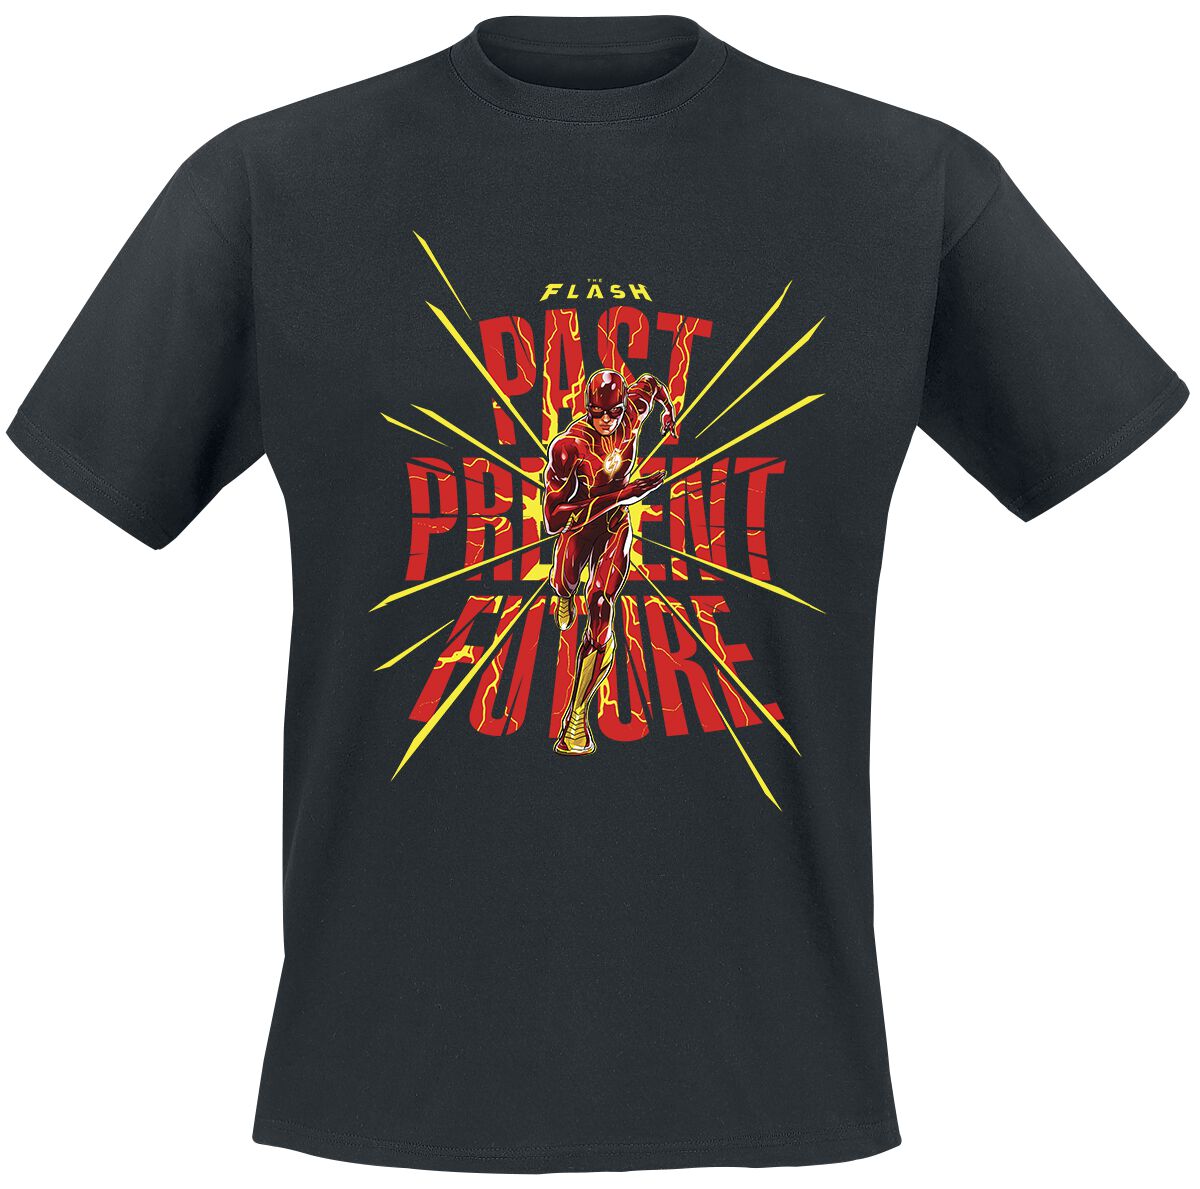 The Flash - DC Comics T-Shirt - Past Present Future - S bis XXL - für Männer - Größe M - schwarz  - Lizenzierter Fanartikel